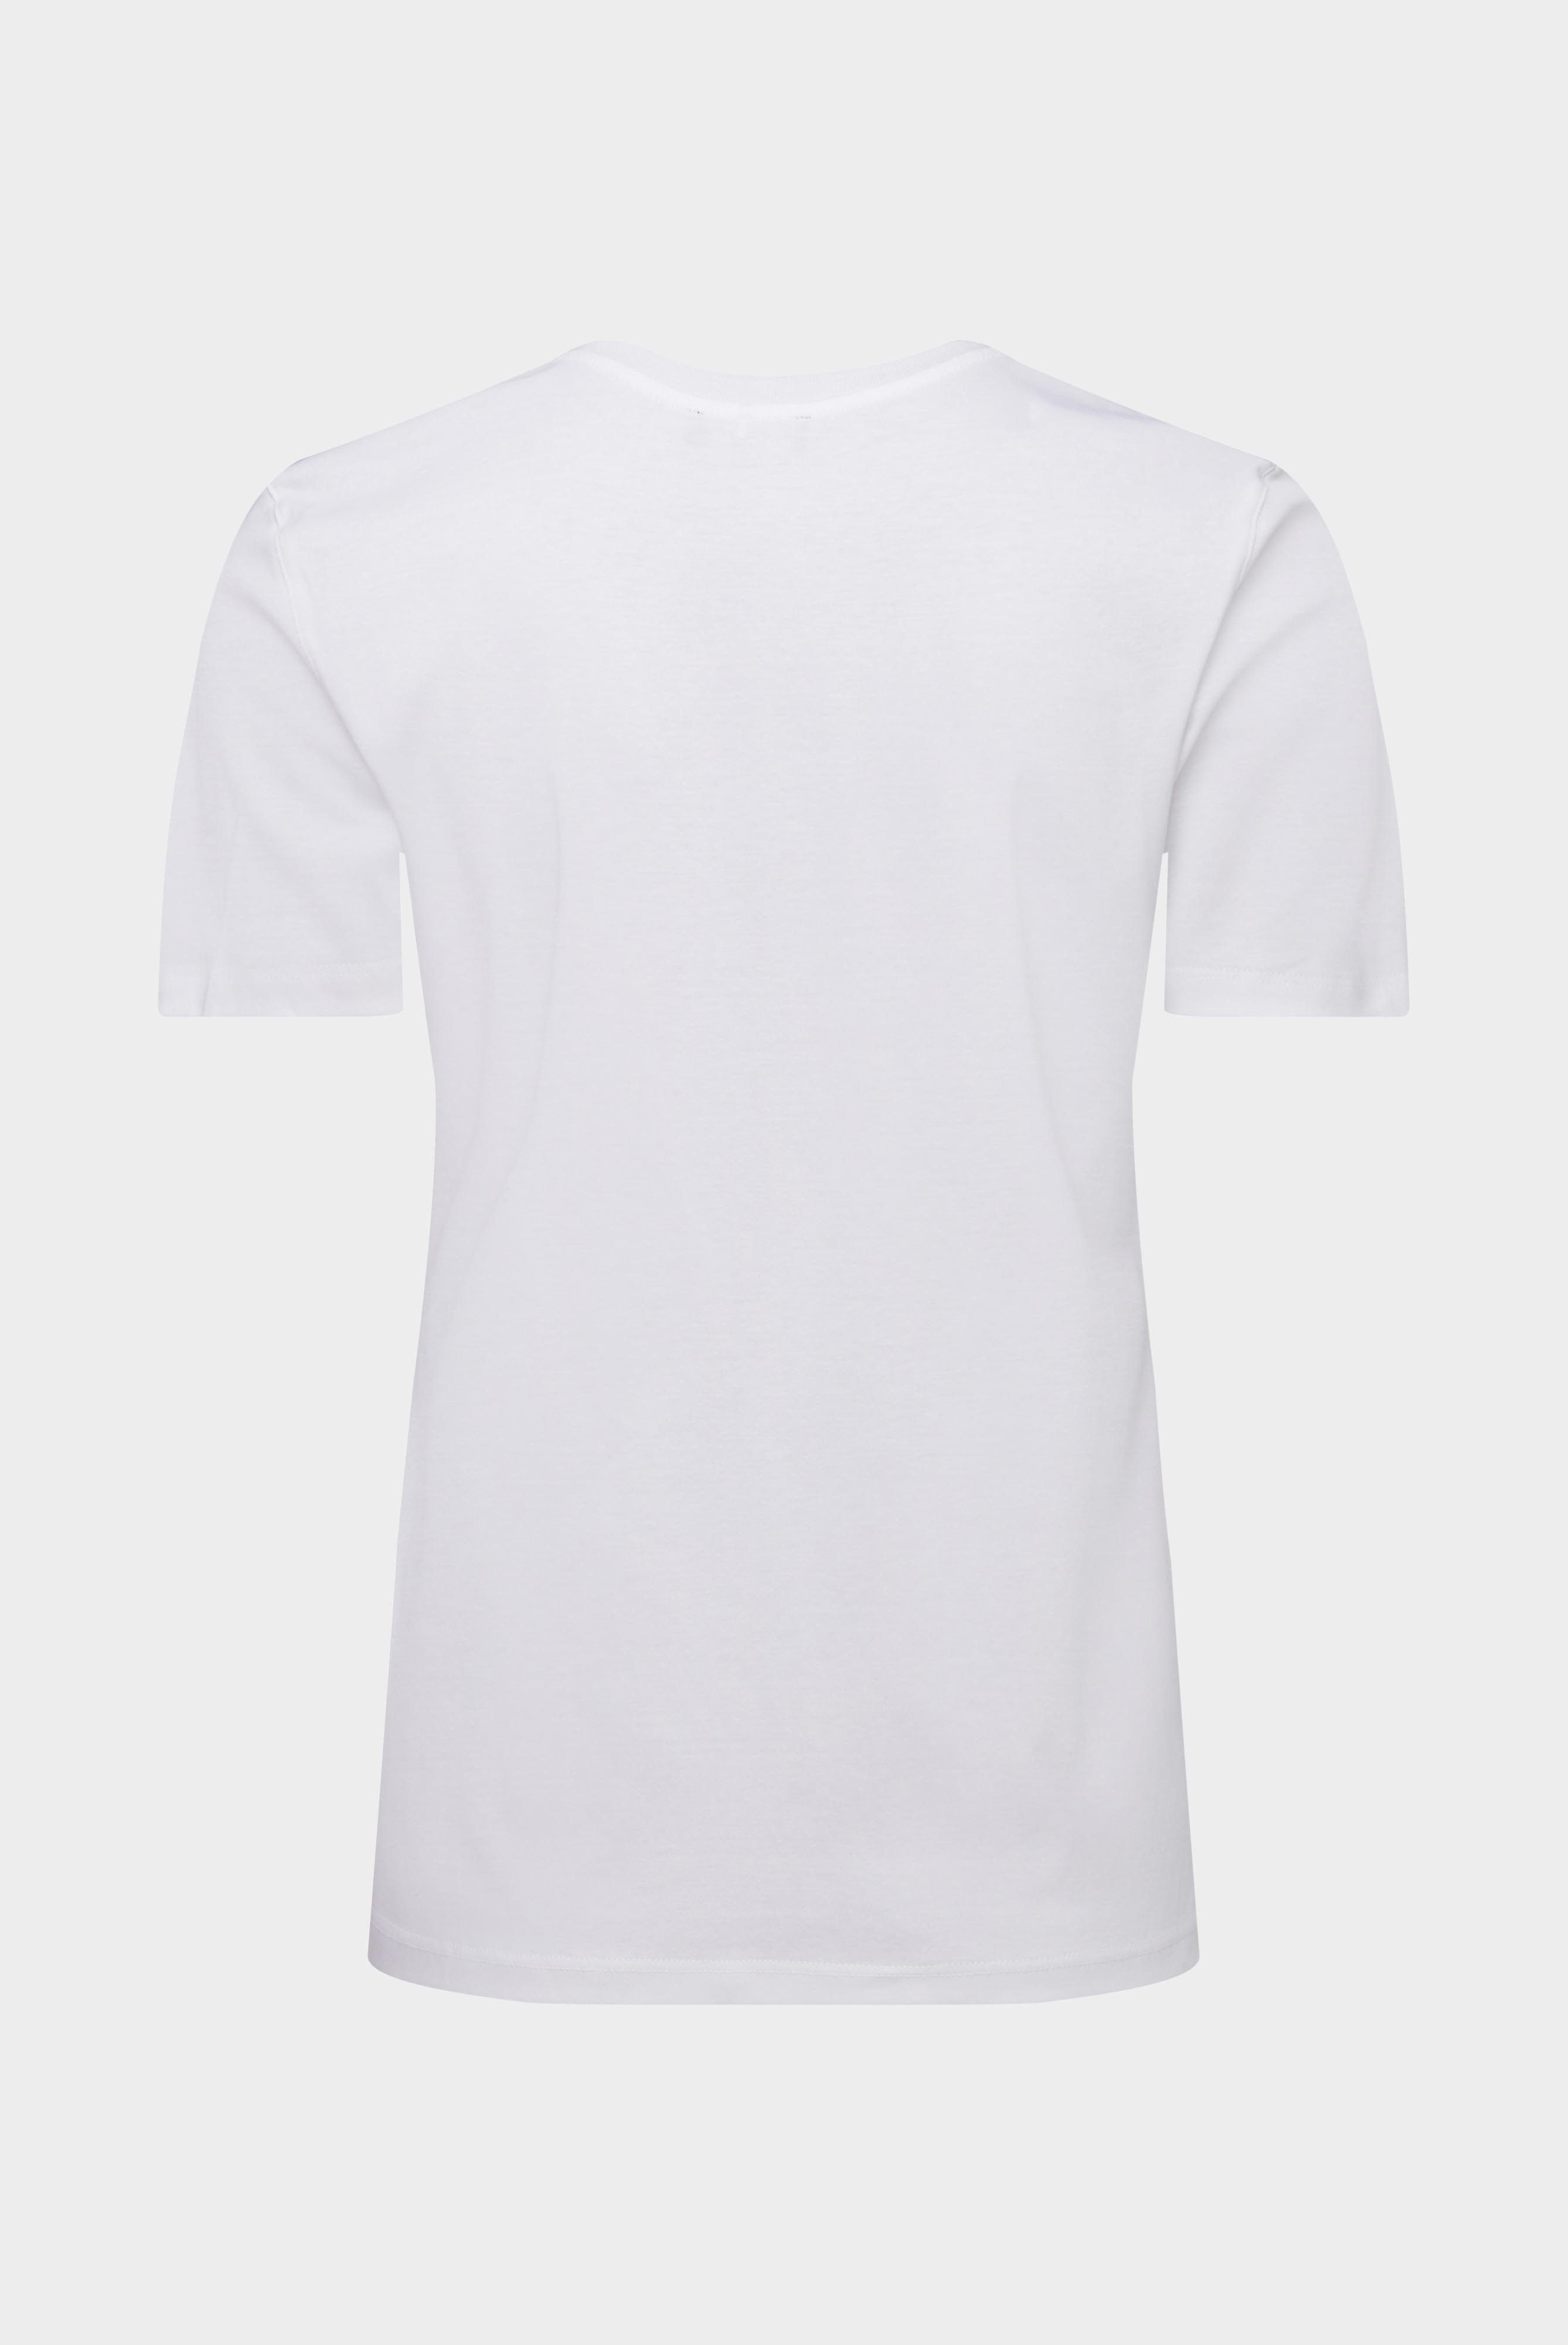 Tops & T-Shirts+Jersey T-Shirt+05.6384.18.180031.000.38